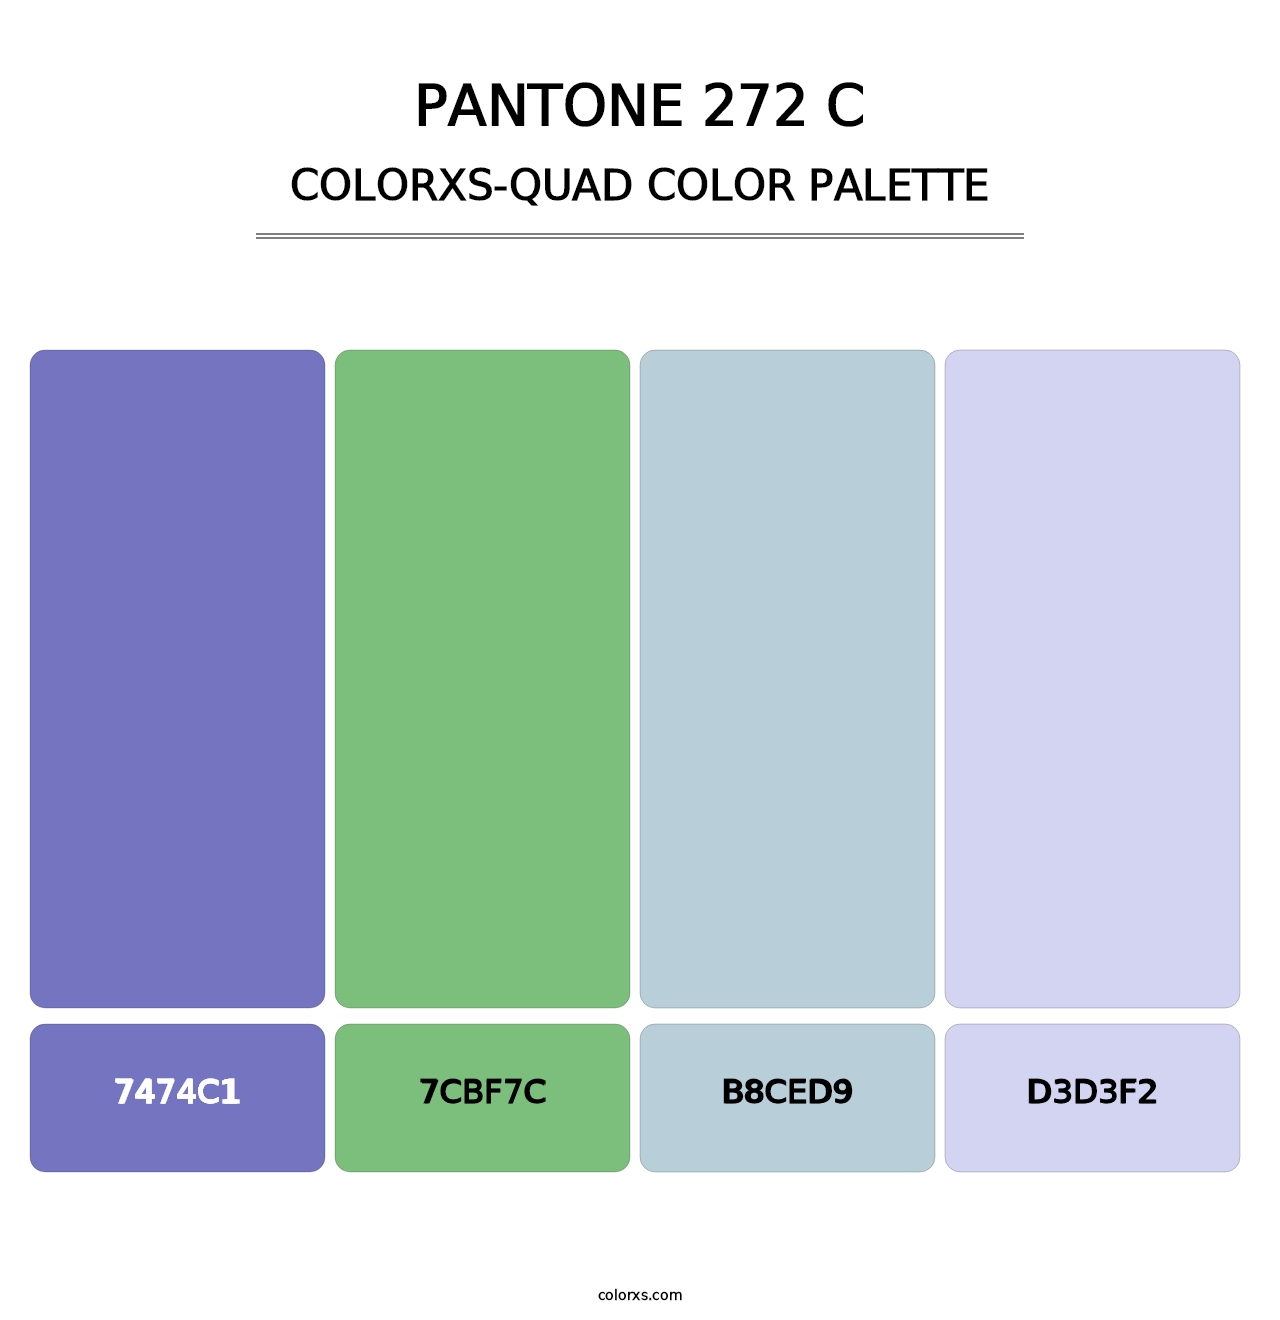 PANTONE 272 C - Colorxs Quad Palette